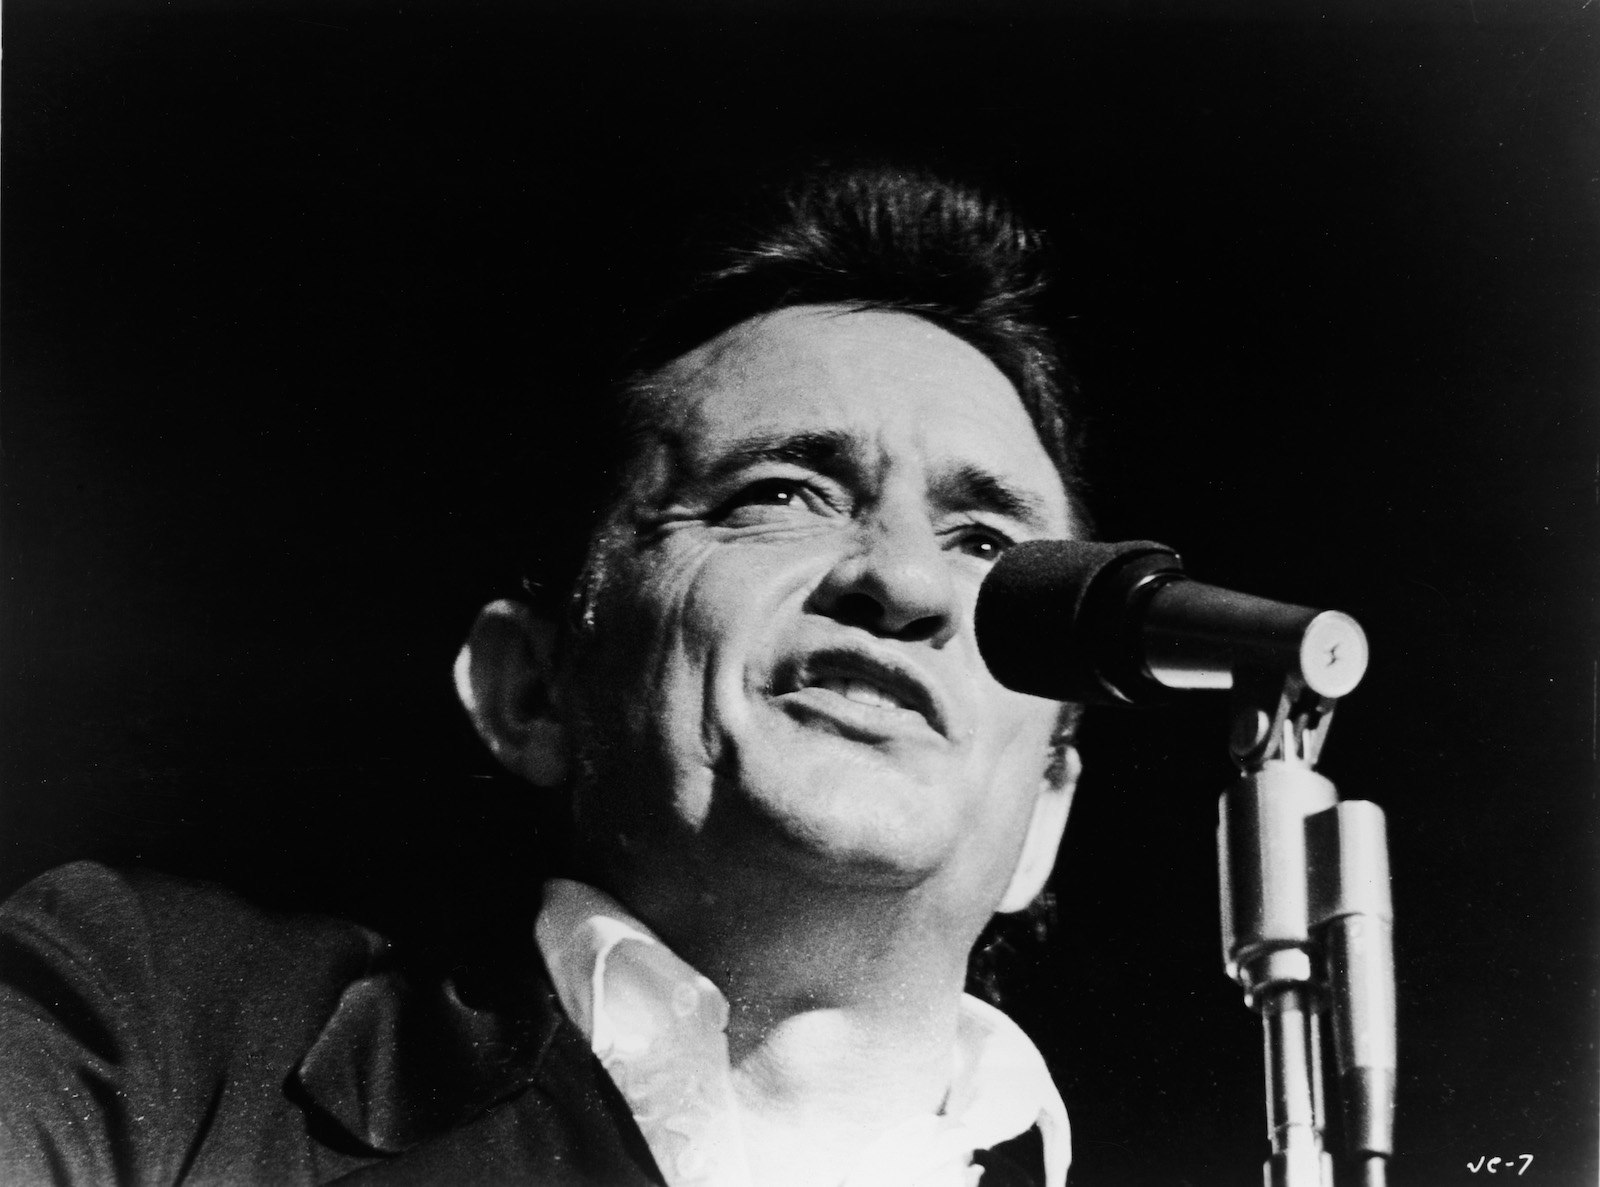 Svartvitt foto av Johnny Cash från axlarna och upp, sjunger i en mikrofon på en show